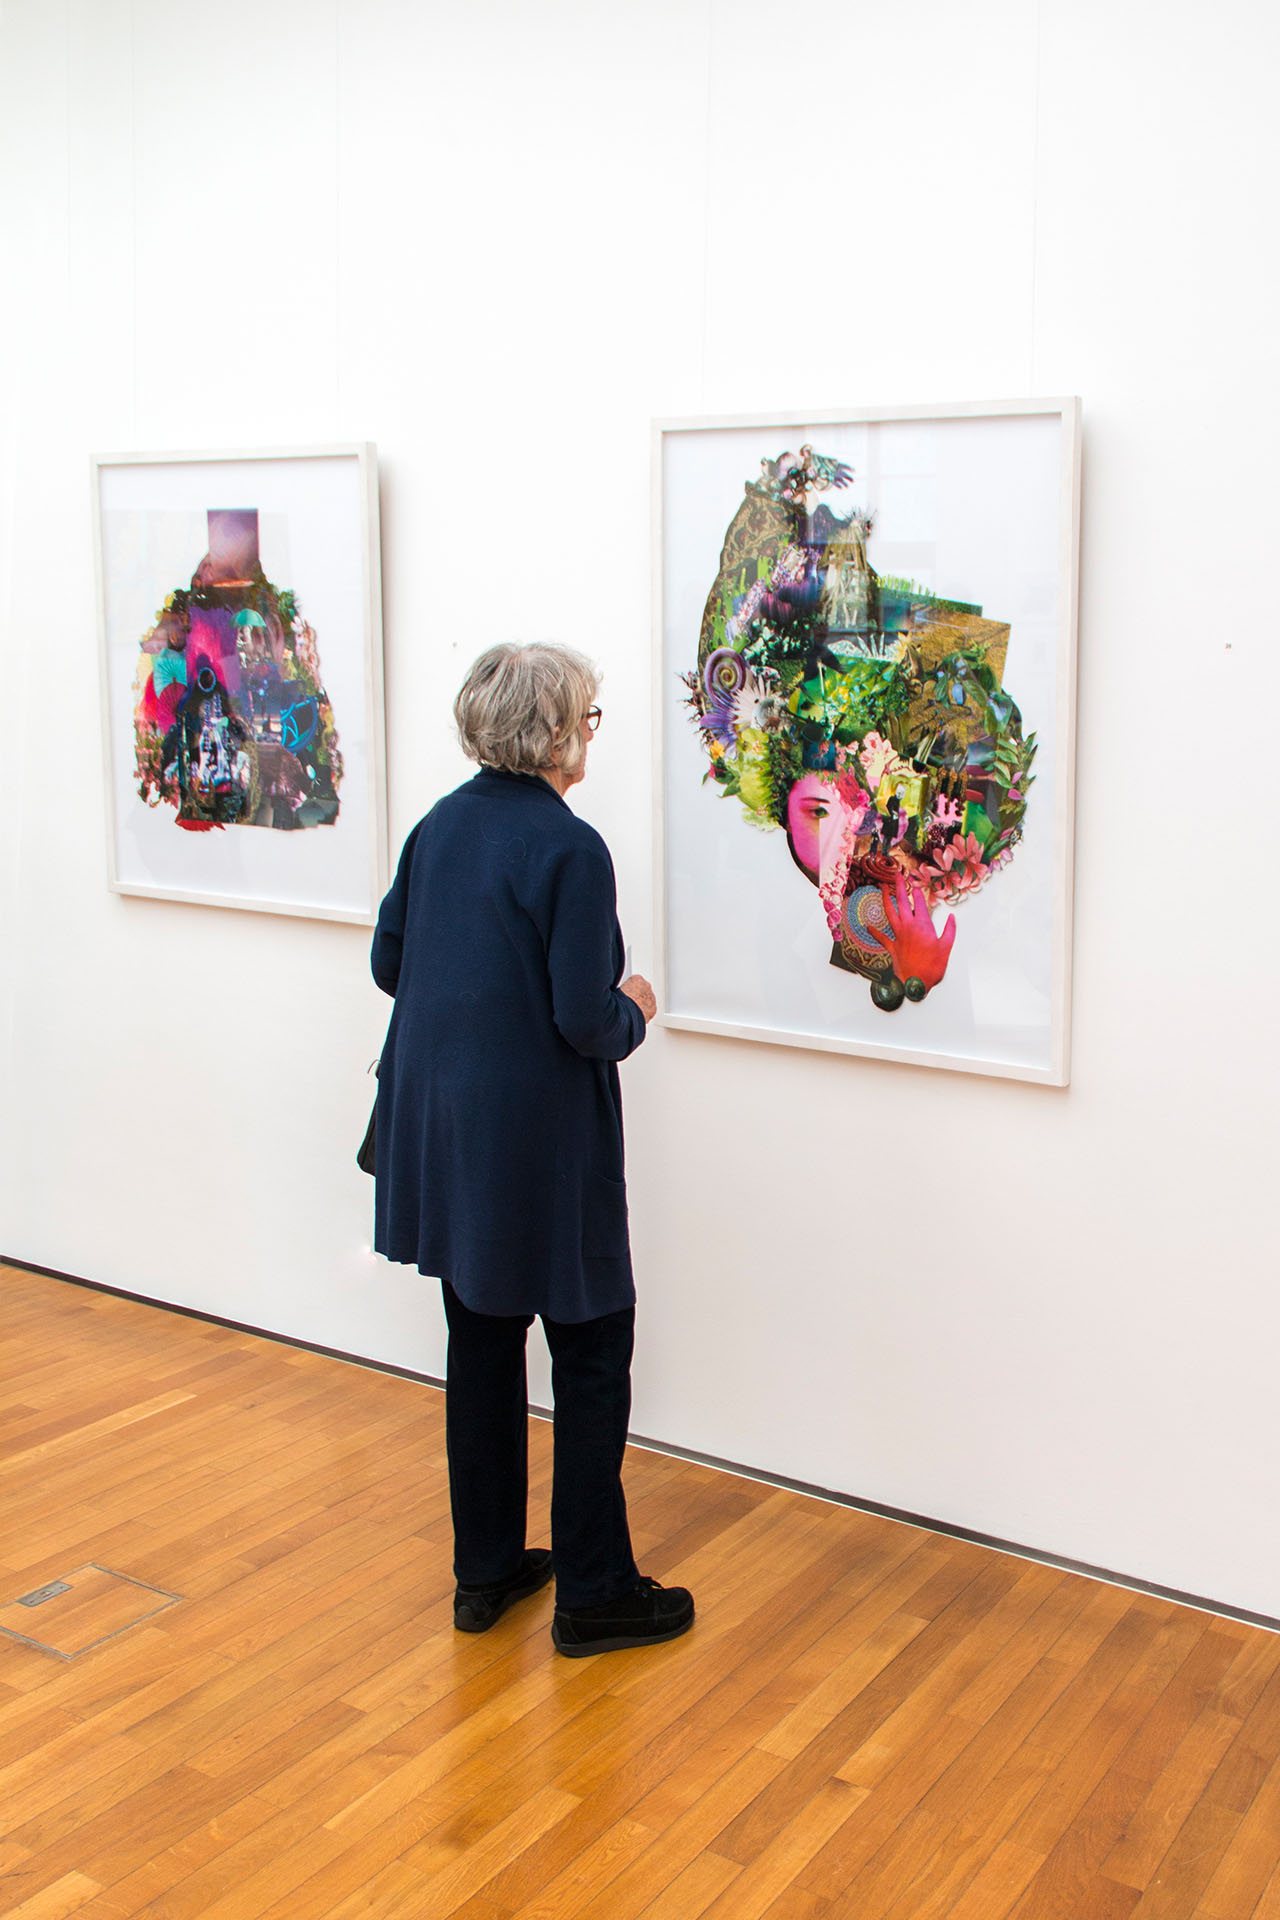 Wiebke Kirchner / "Schnecke" / Ausstellungsansicht "Kein Zufall" / Willi Sitte Galerie Merseburg / 2019